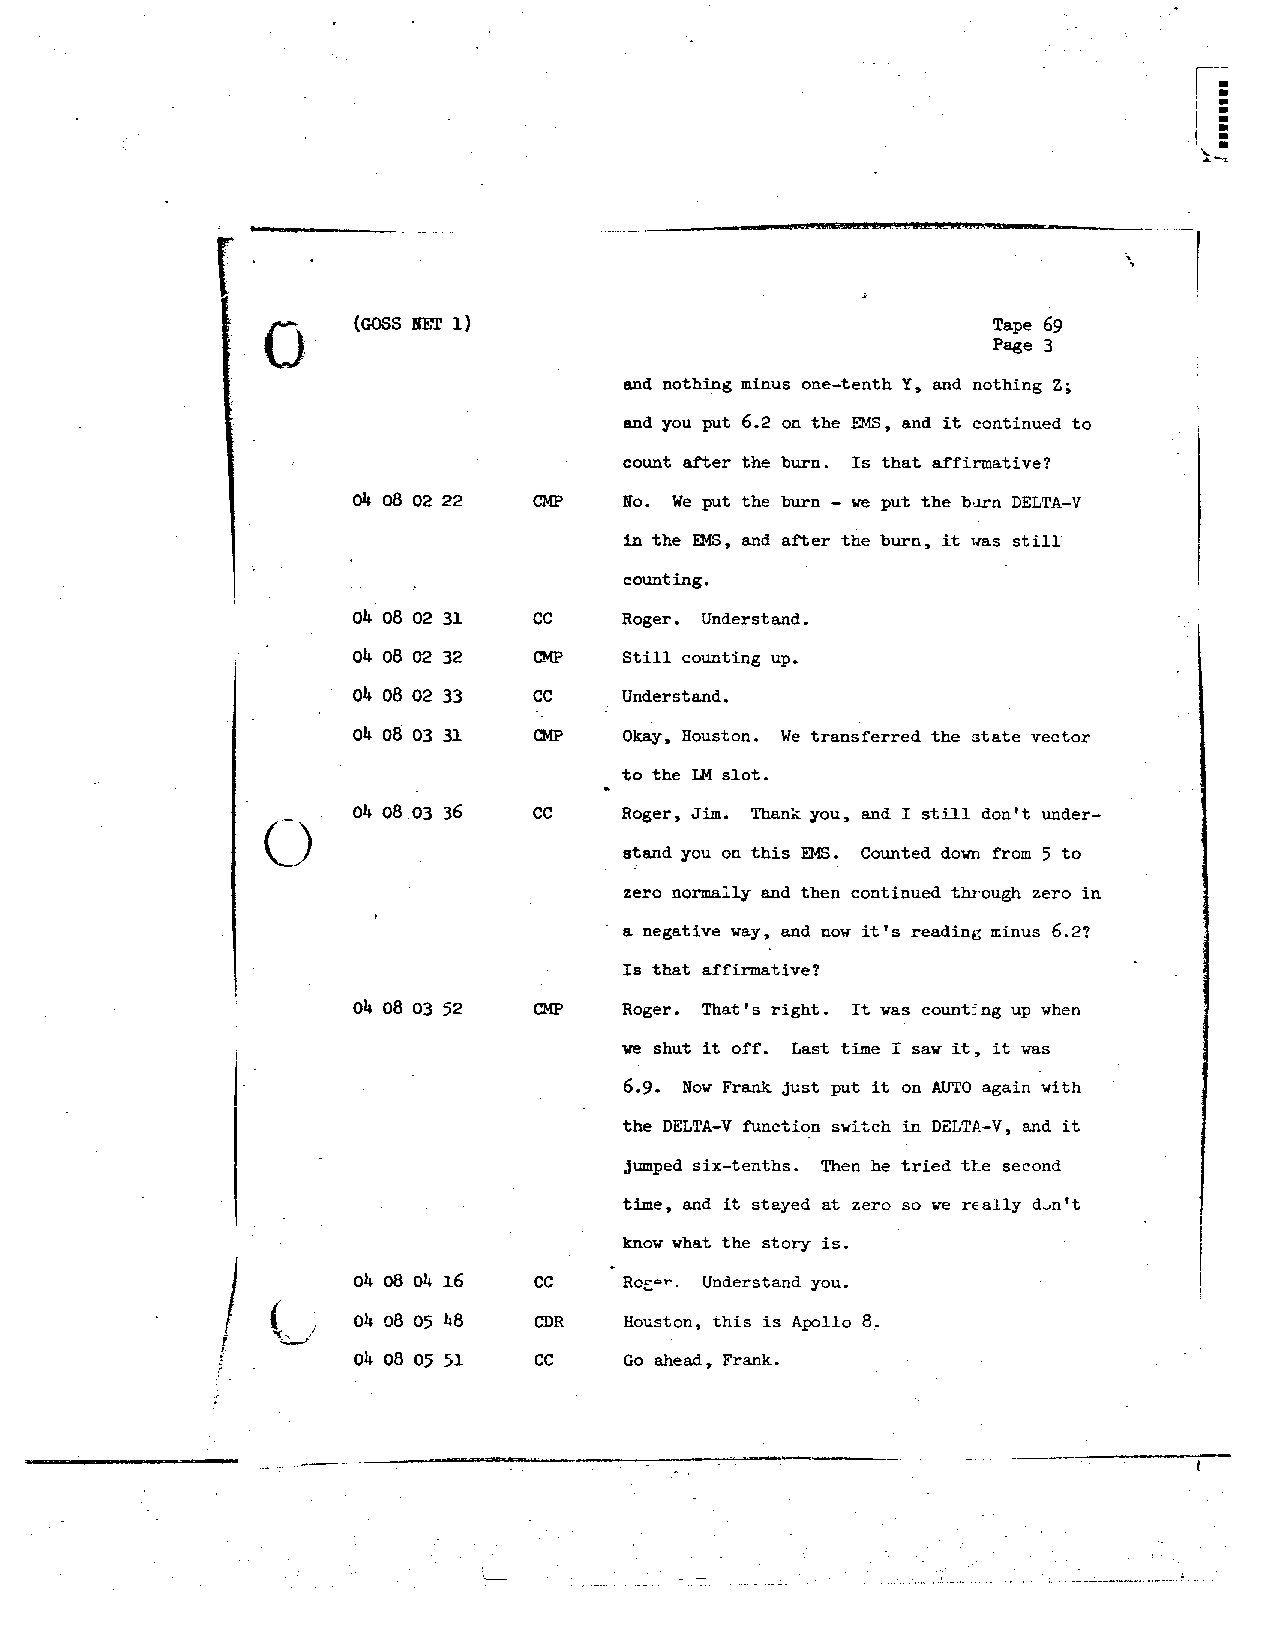 Page 549 of Apollo 8’s original transcript